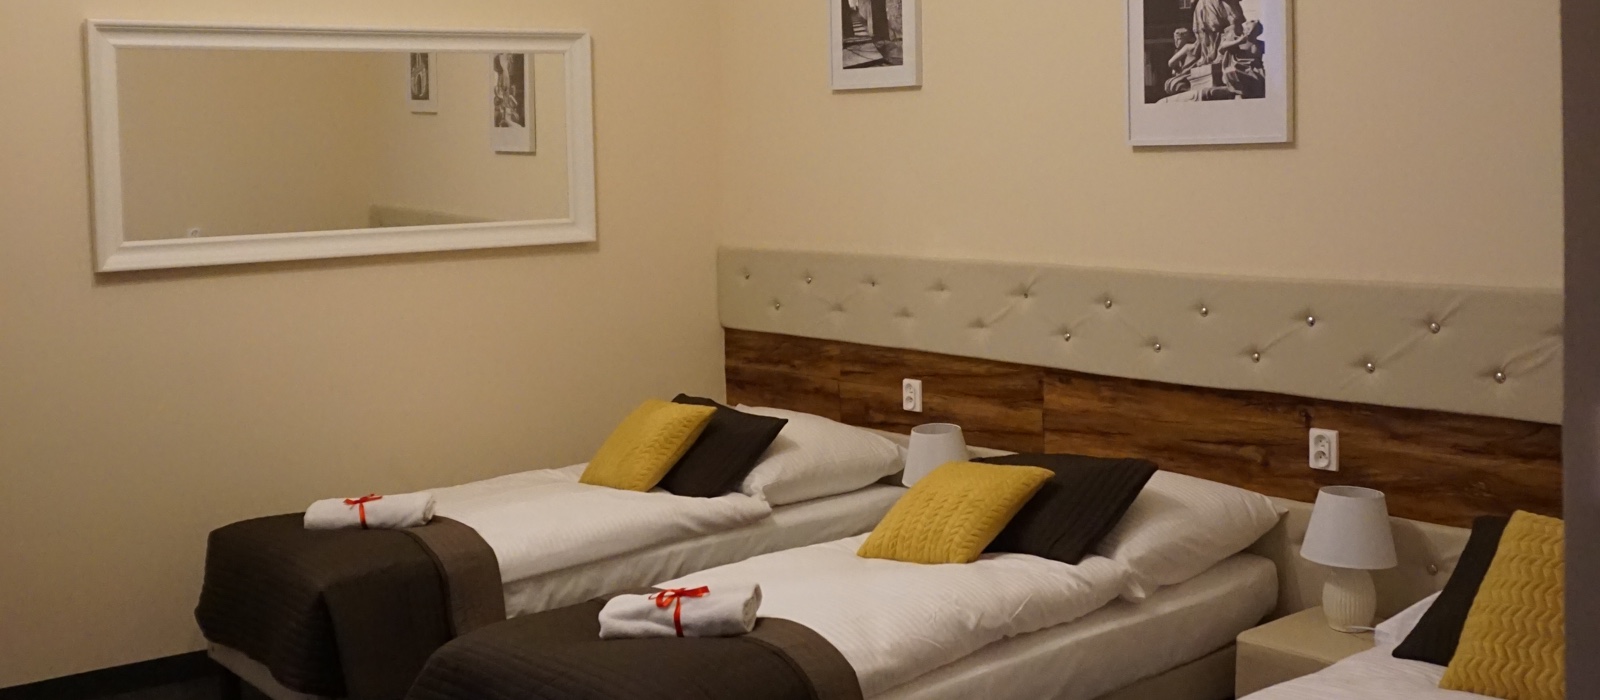 Pokój trzyosobowy Economy w Hotelu Expolis Residence baner